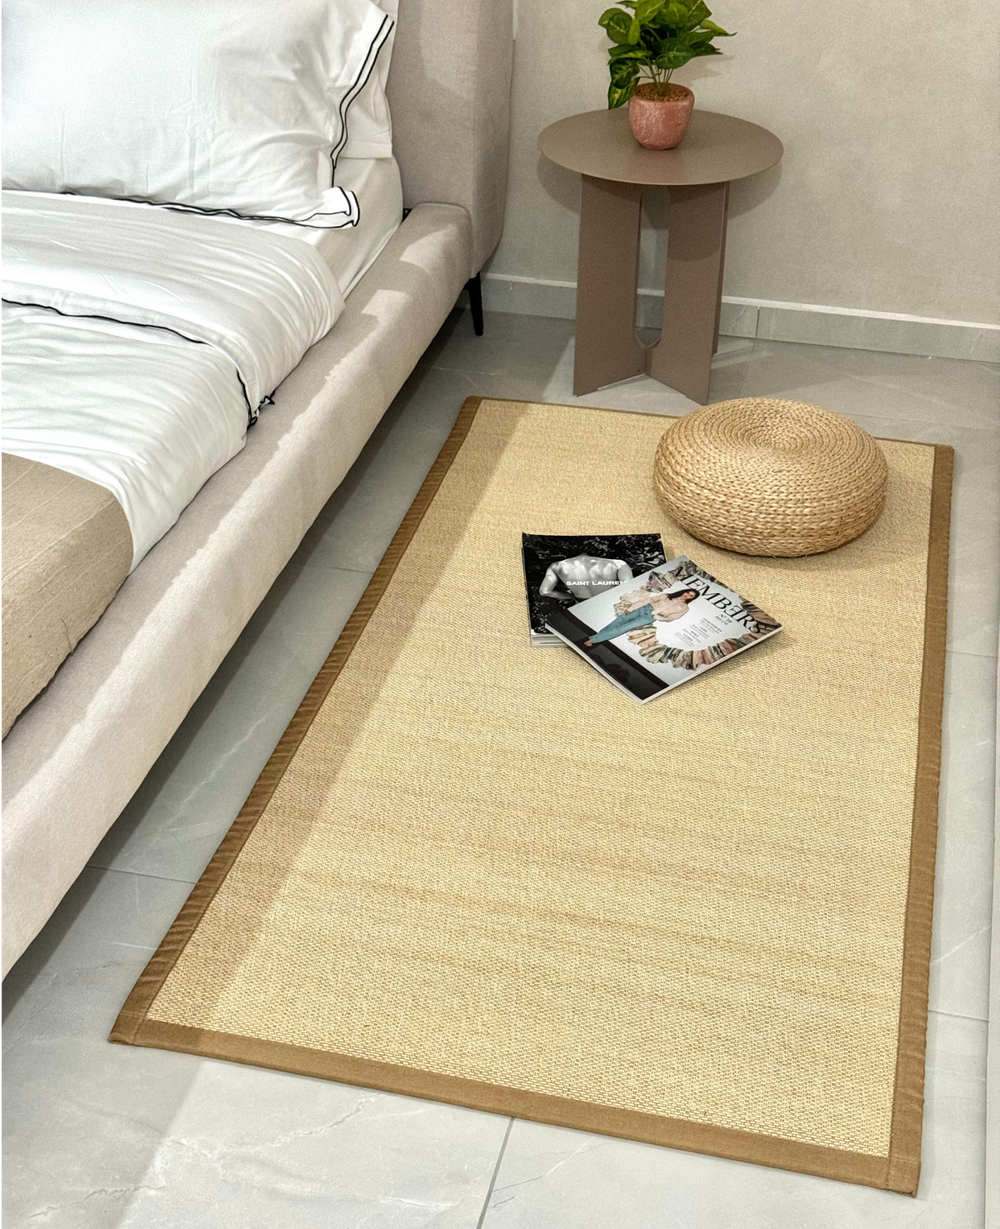 שטיח טאטאמי במבוק - במכירה מוקדמת